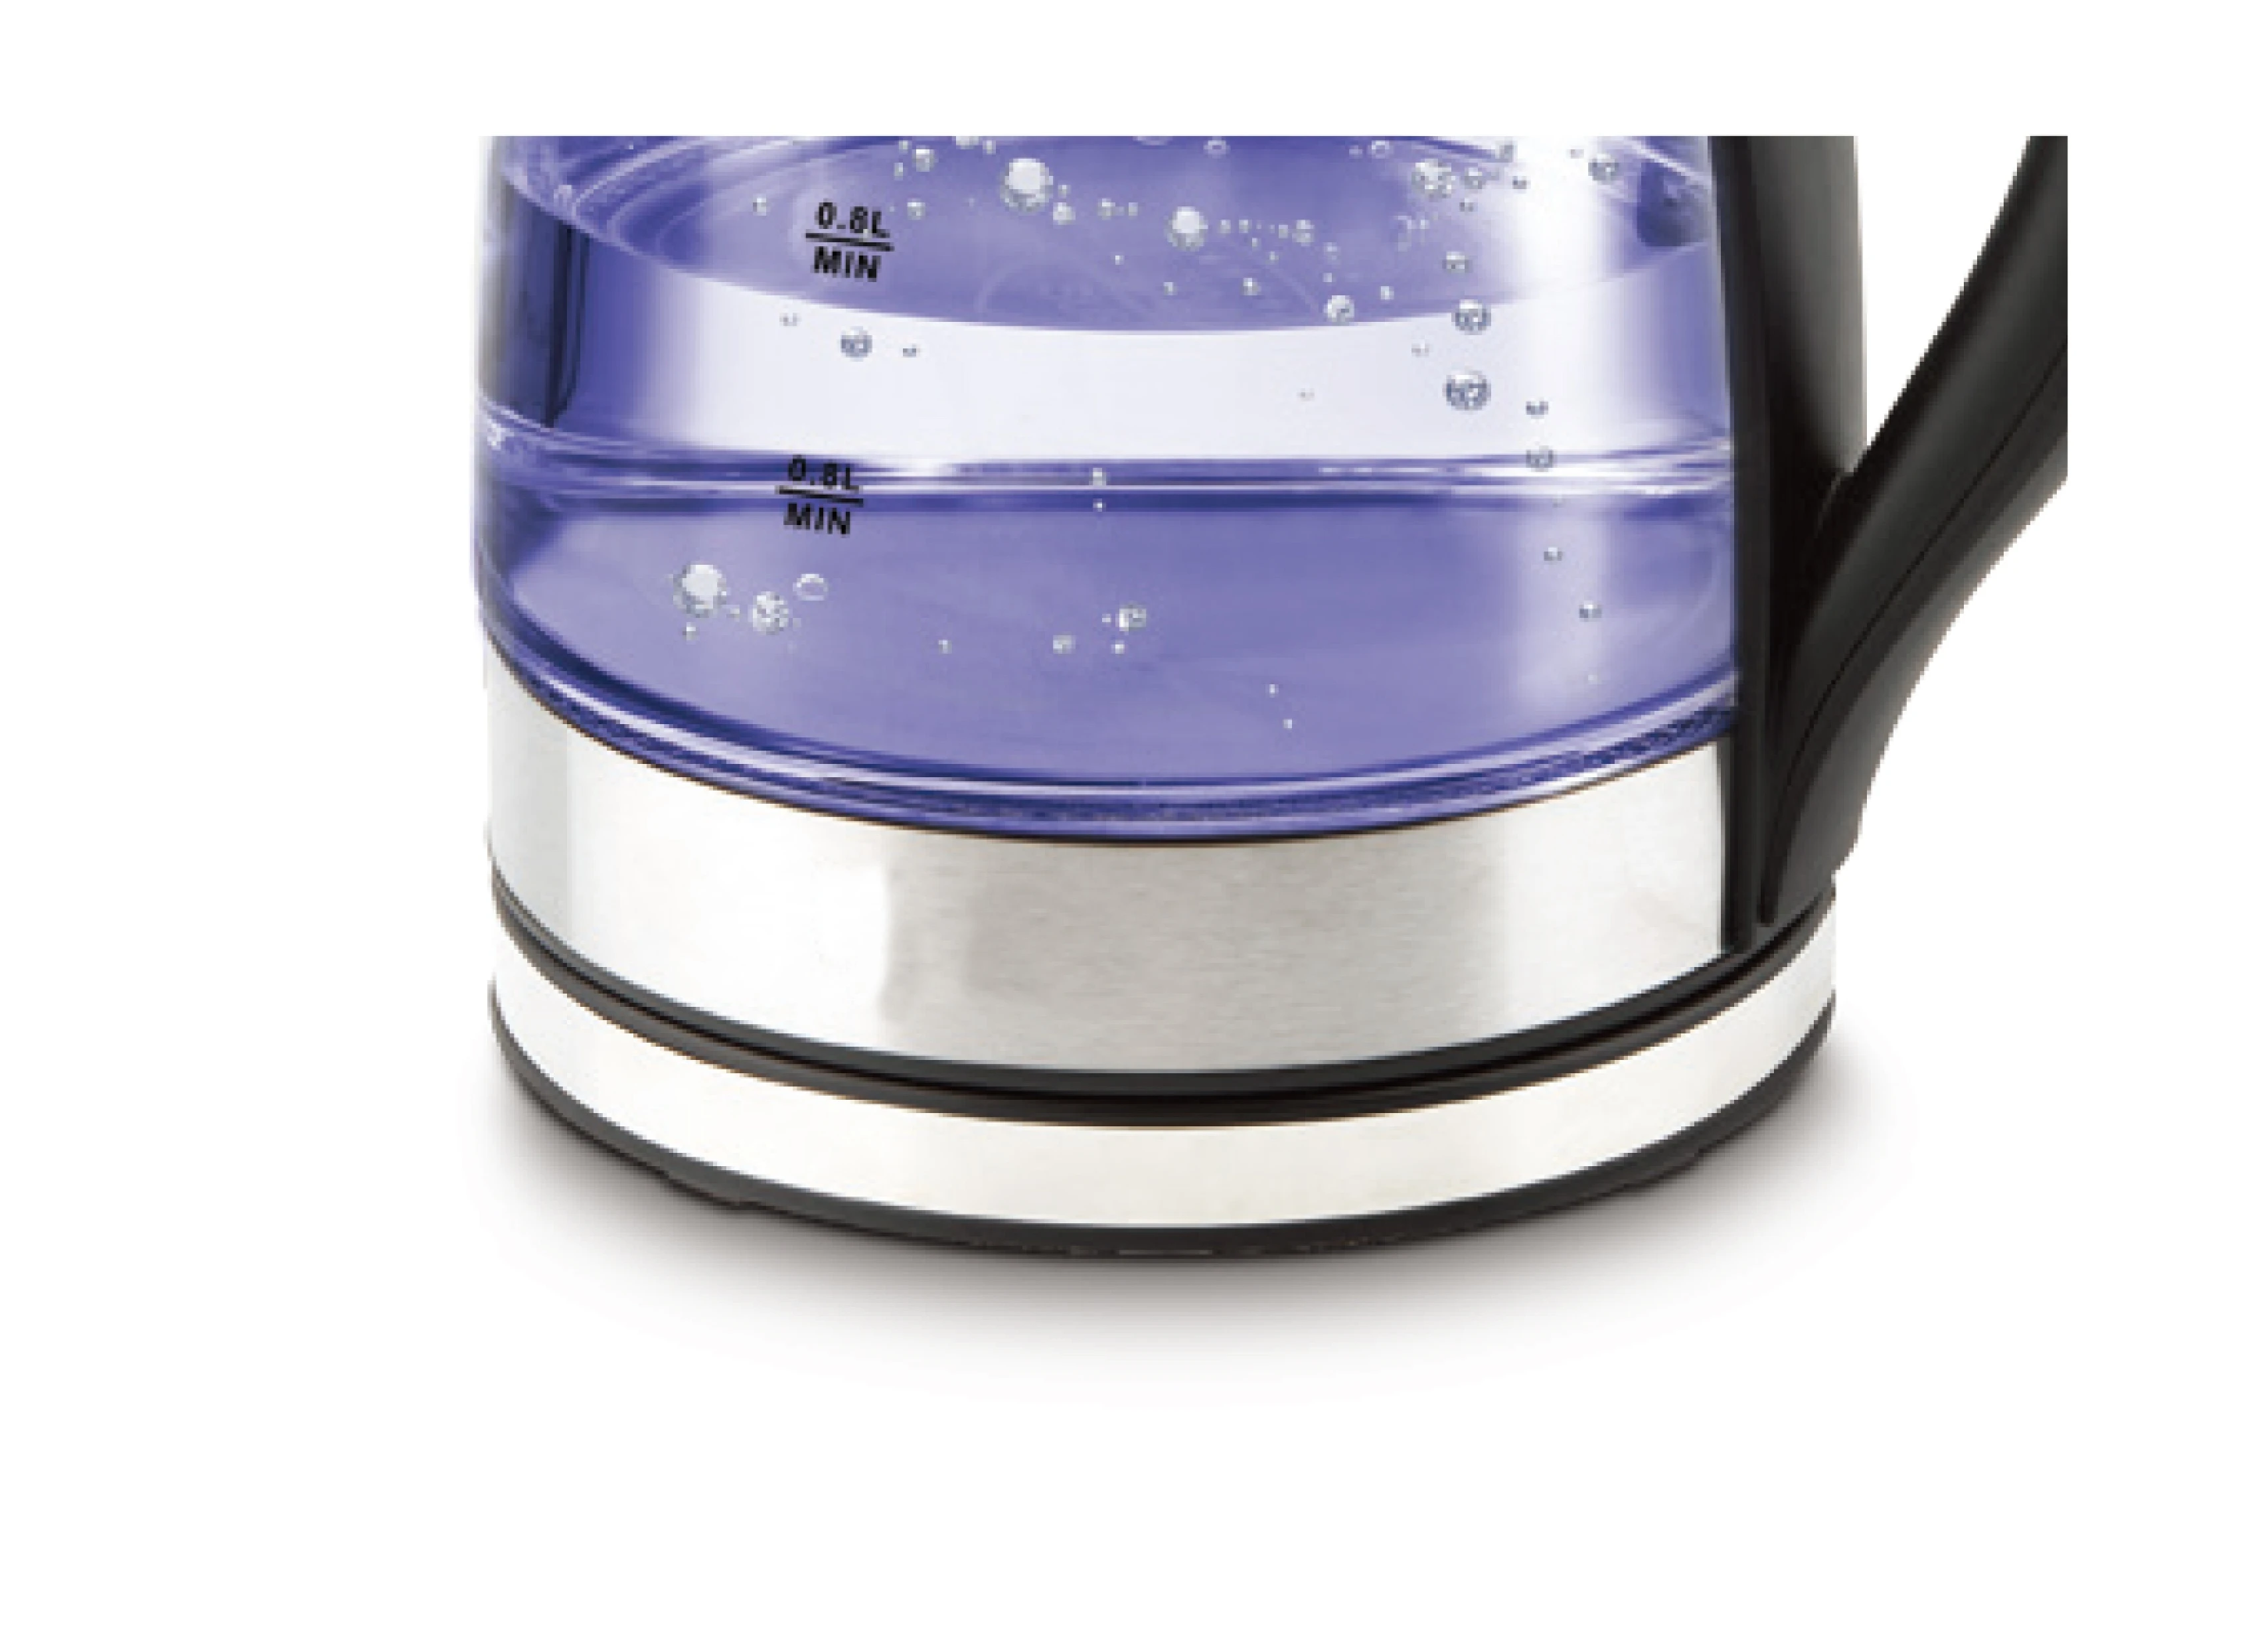 food grade  1.7L 220V home appliances electric kettle